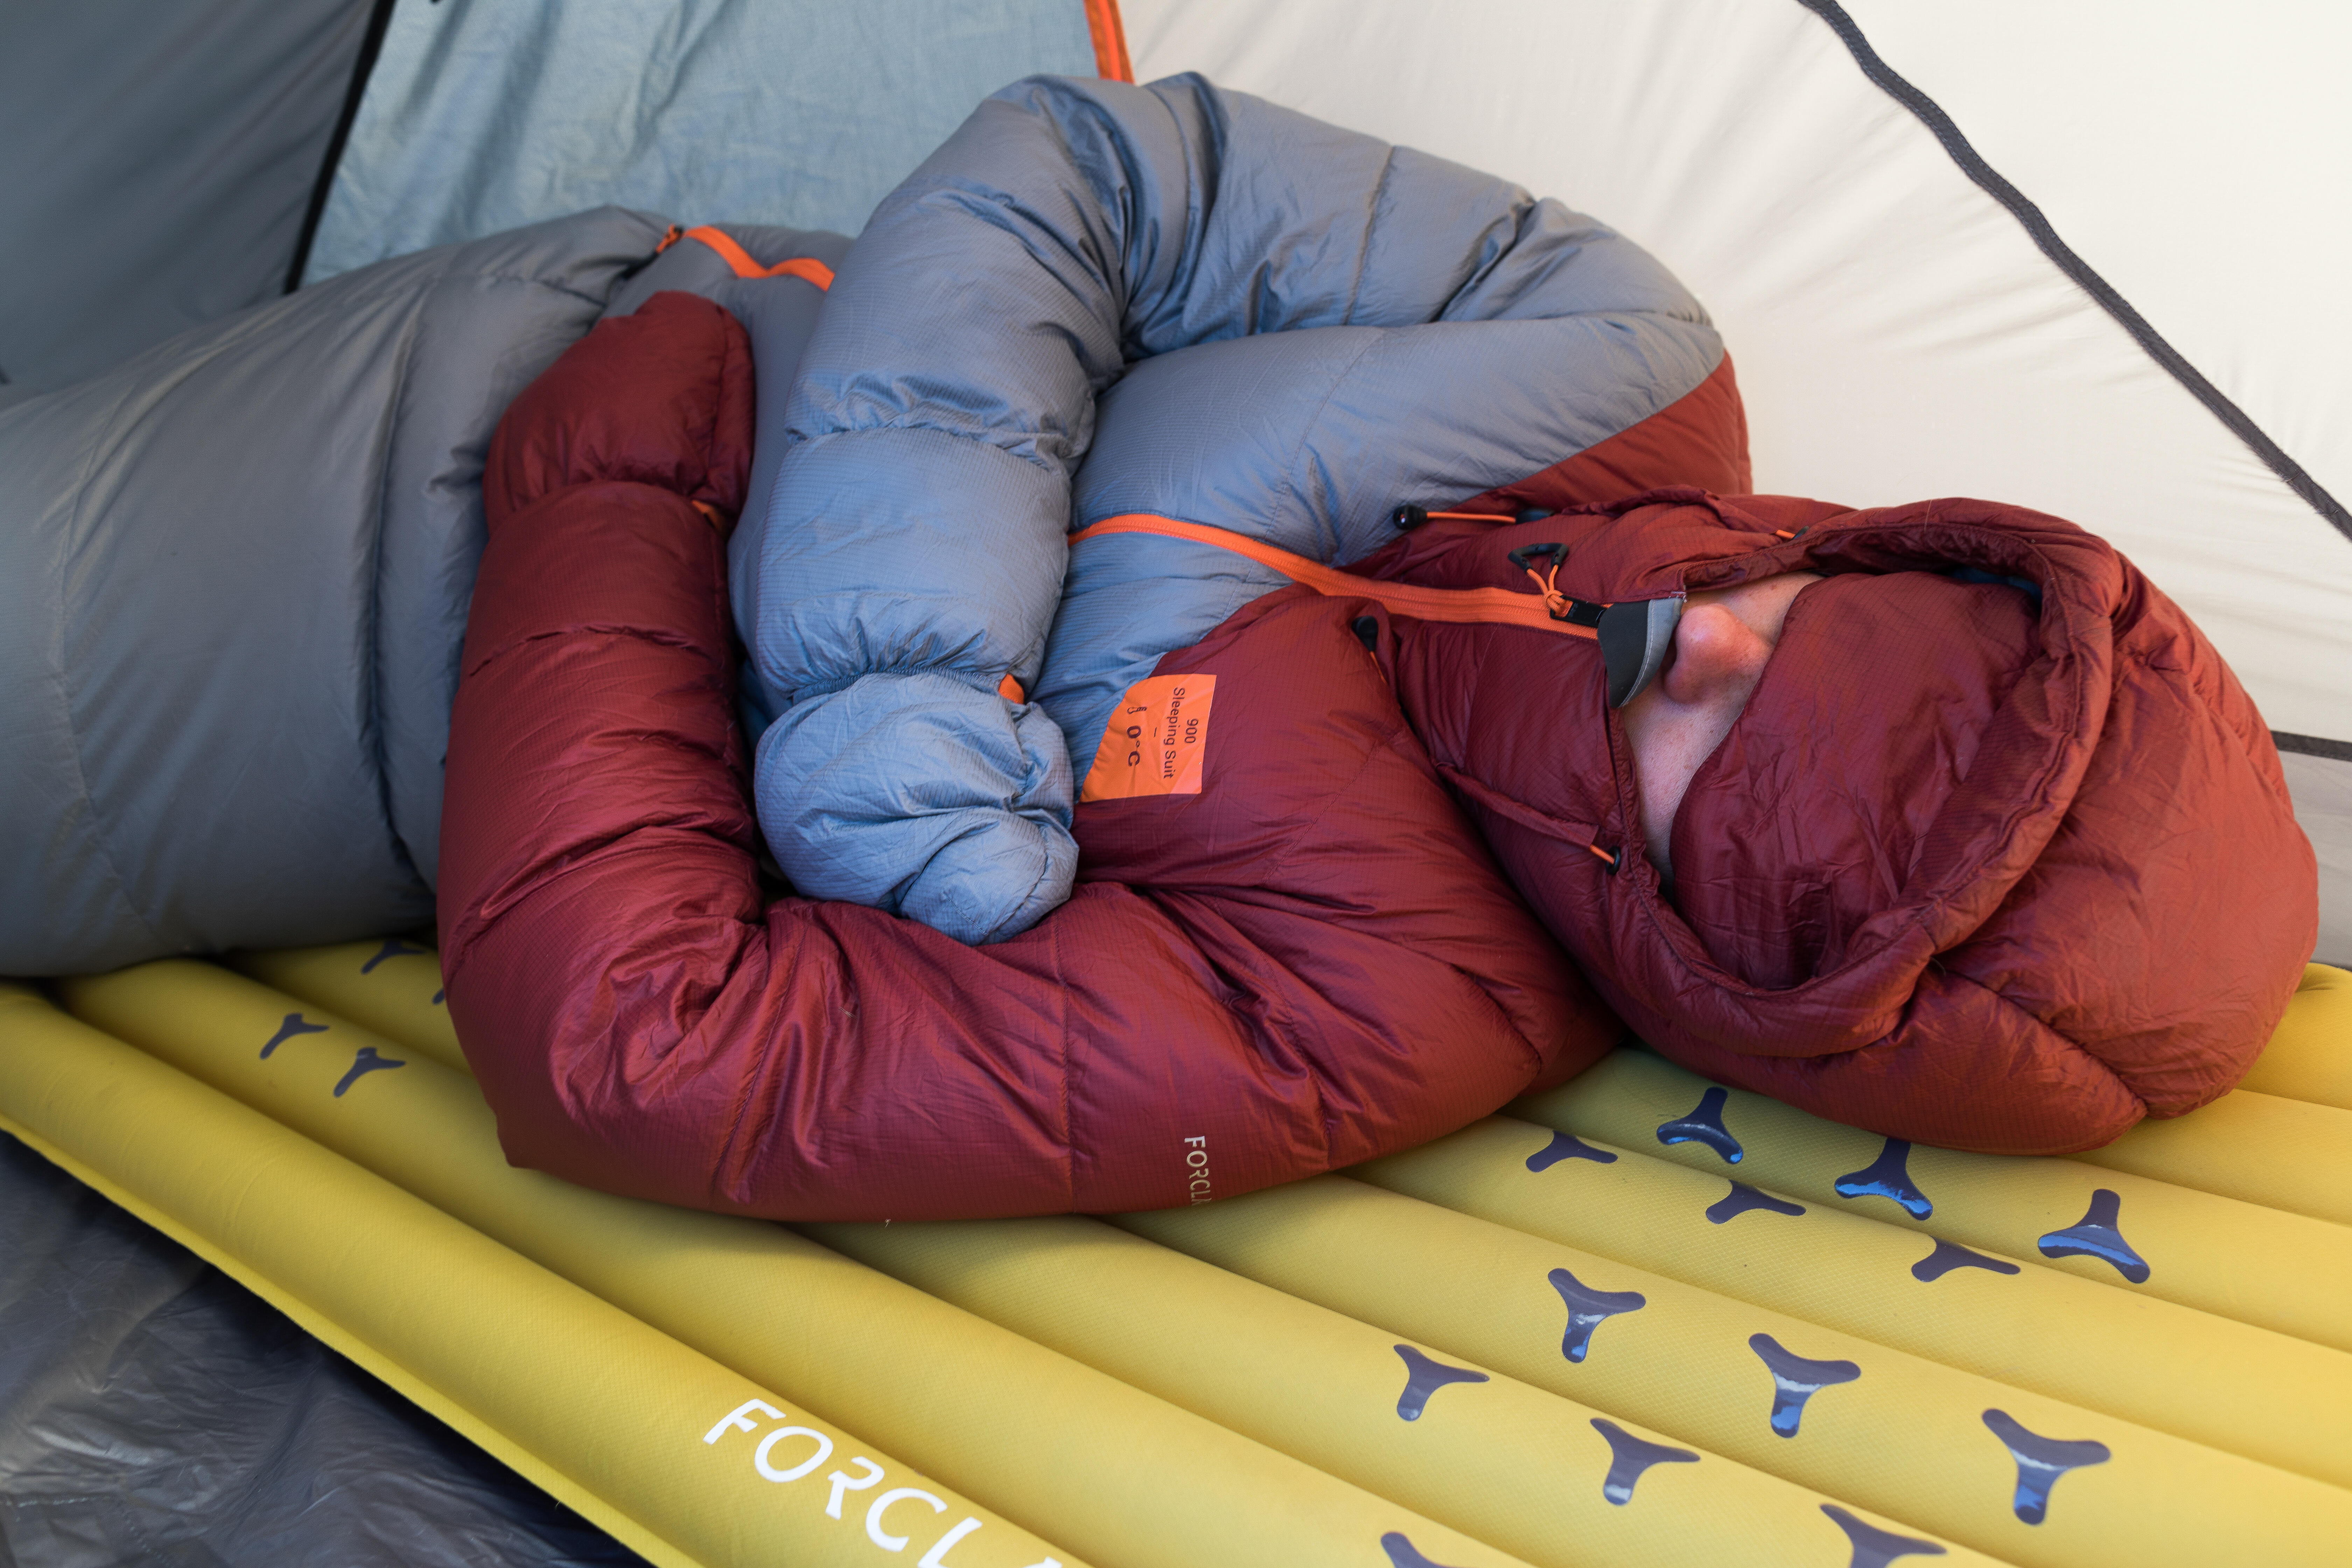 Hogy lesz kényelmes az alvás a felfújható túramatracon?